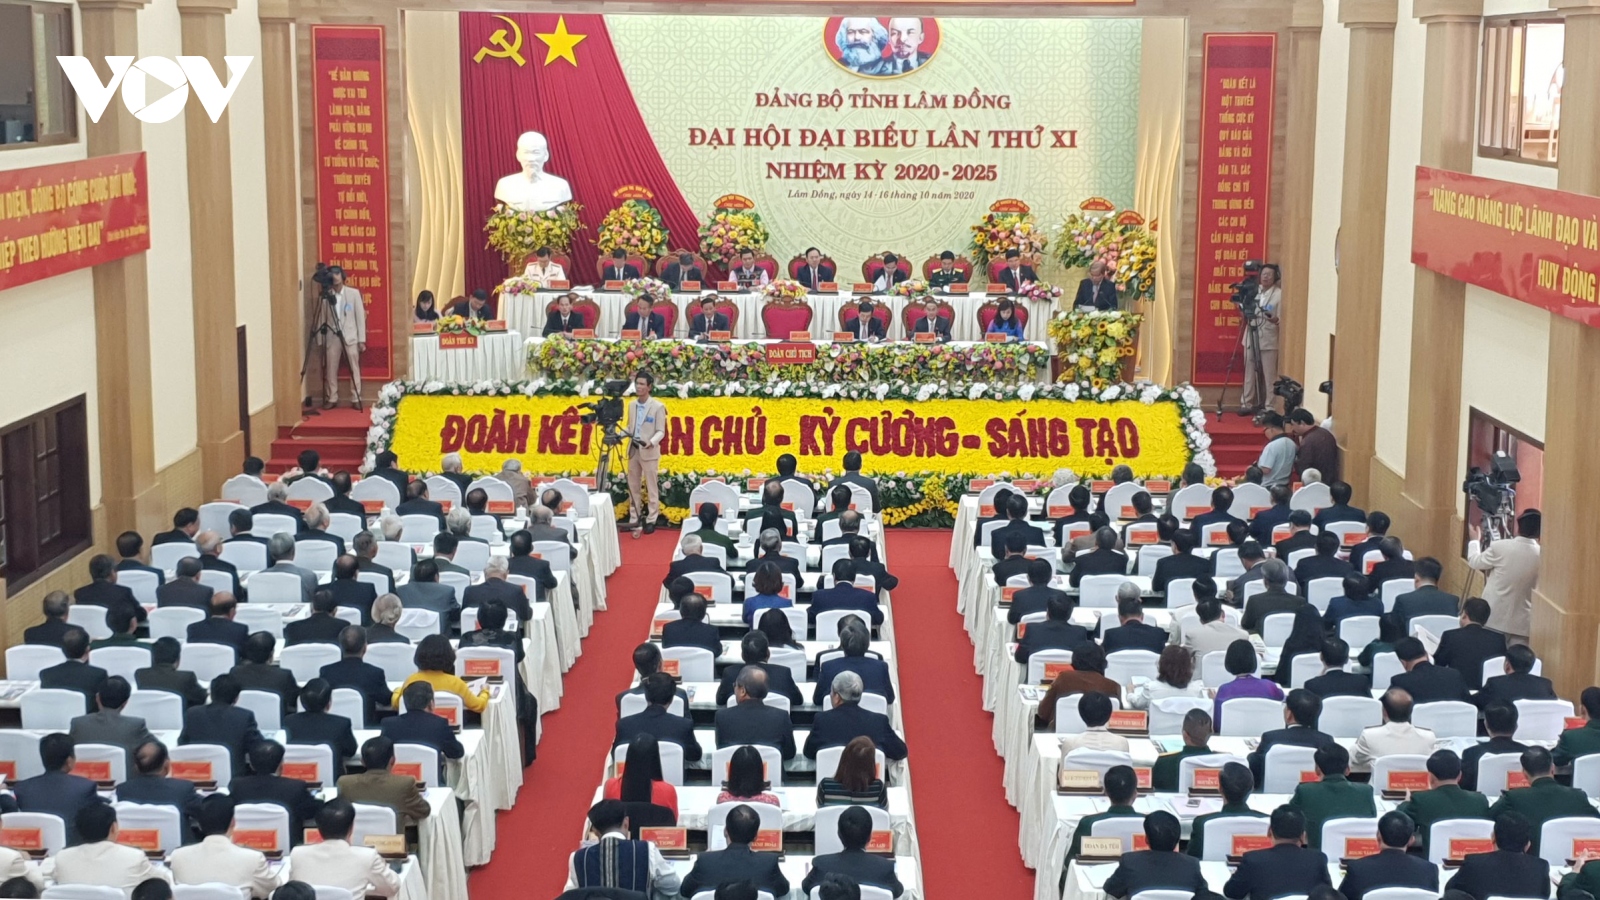 Khai mạc Đại hội Đảng bộ tỉnh Lâm Đồng lần thứ XI